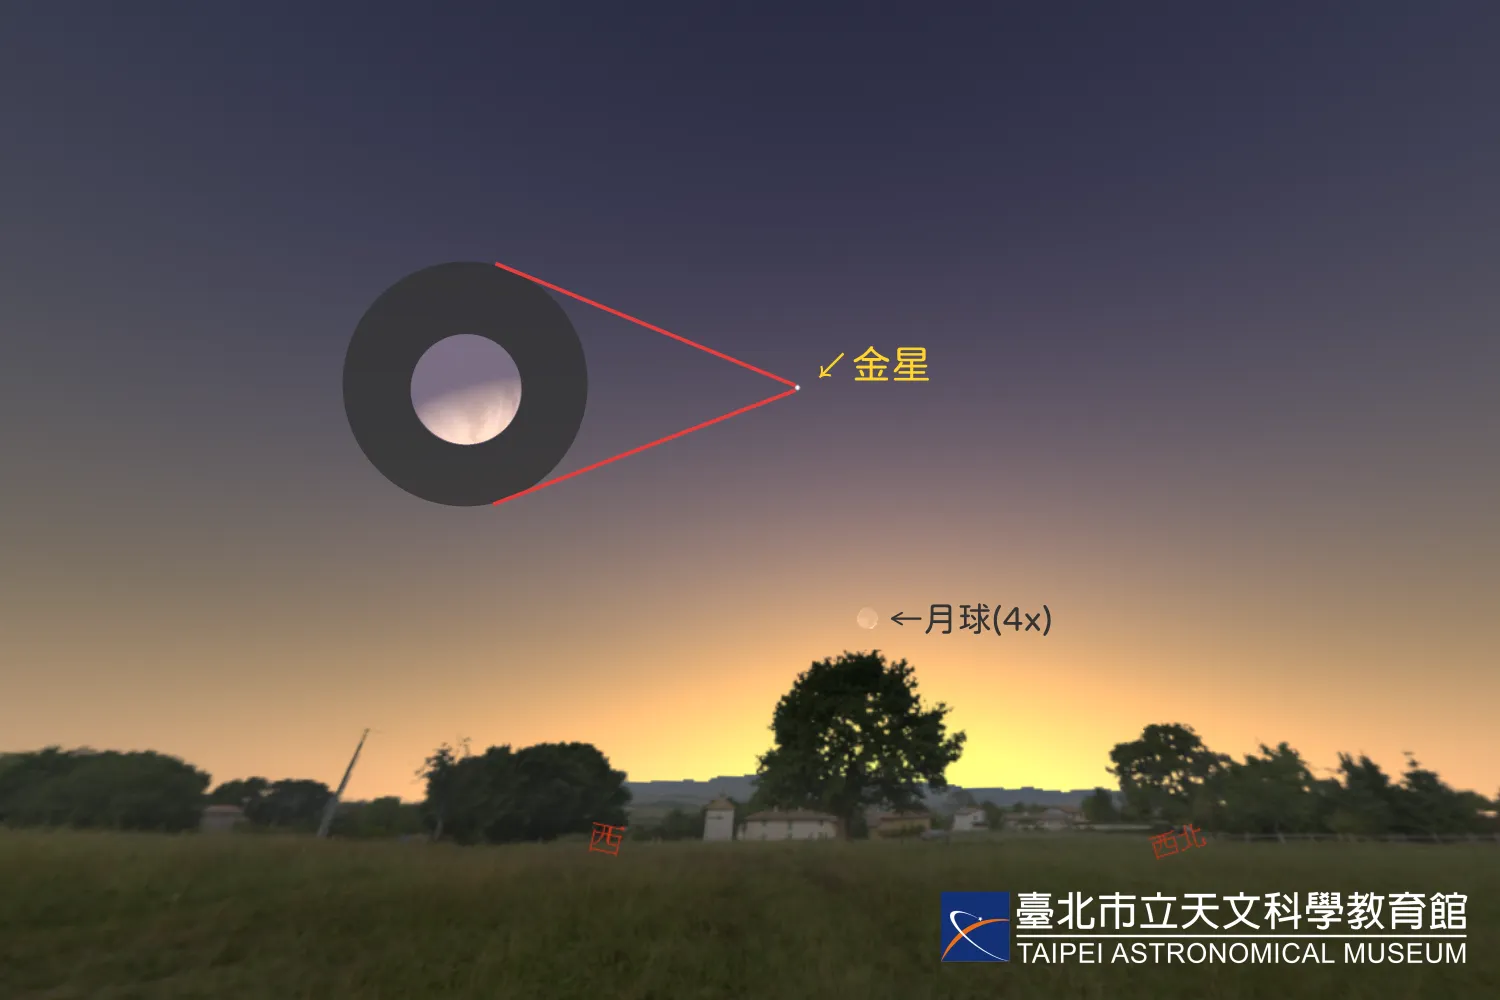 2023年5月21日日落时西方天空的模拟画面。暮光中的金星仰角高达42度，圆内为望远镜高倍率下所见之金星样貌。